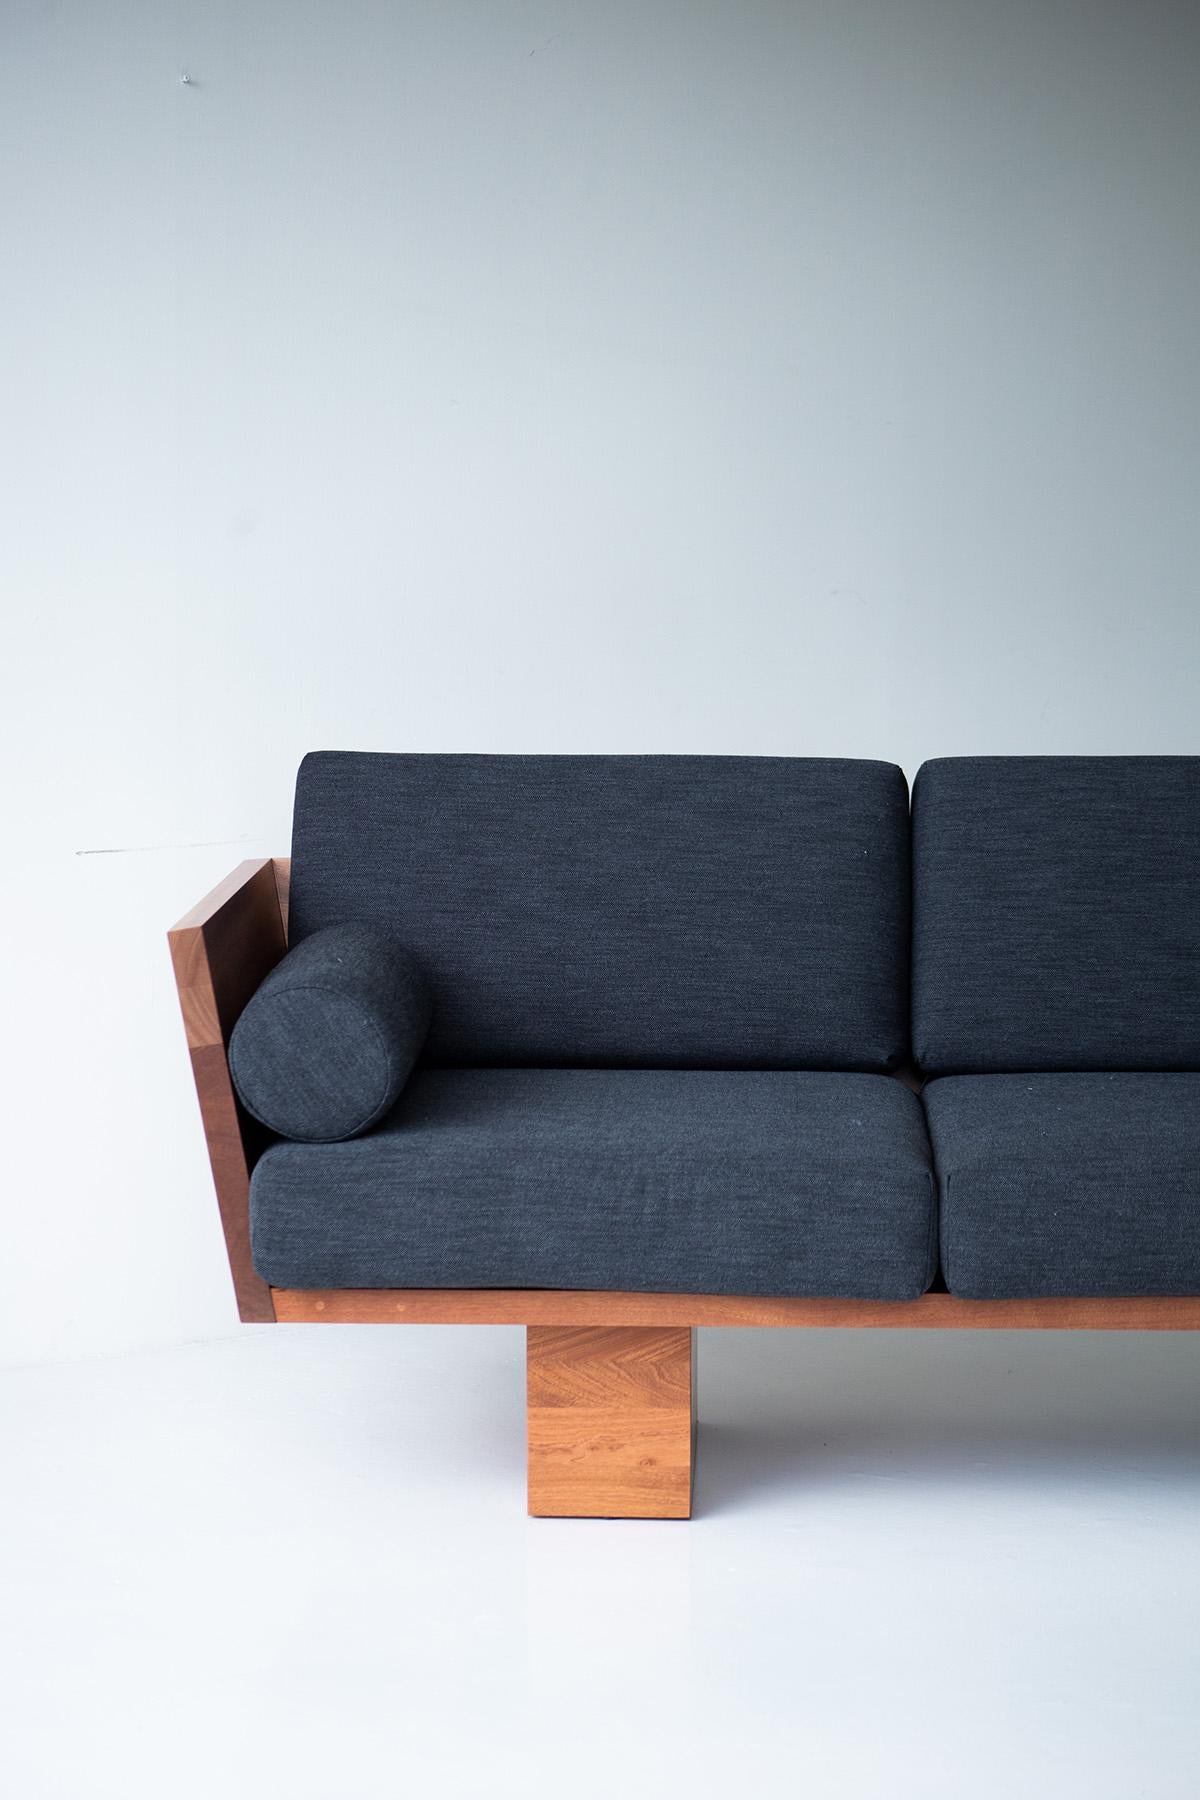 Ce canapé d'extérieur Suelo Modern est magnifiquement construit en bois massif dans l'Ohio, aux États-Unis. La silhouette de ce canapé est simple, moderne et élégante, avec des coussins de siège et de dossier confortables. Le cadre en bois est